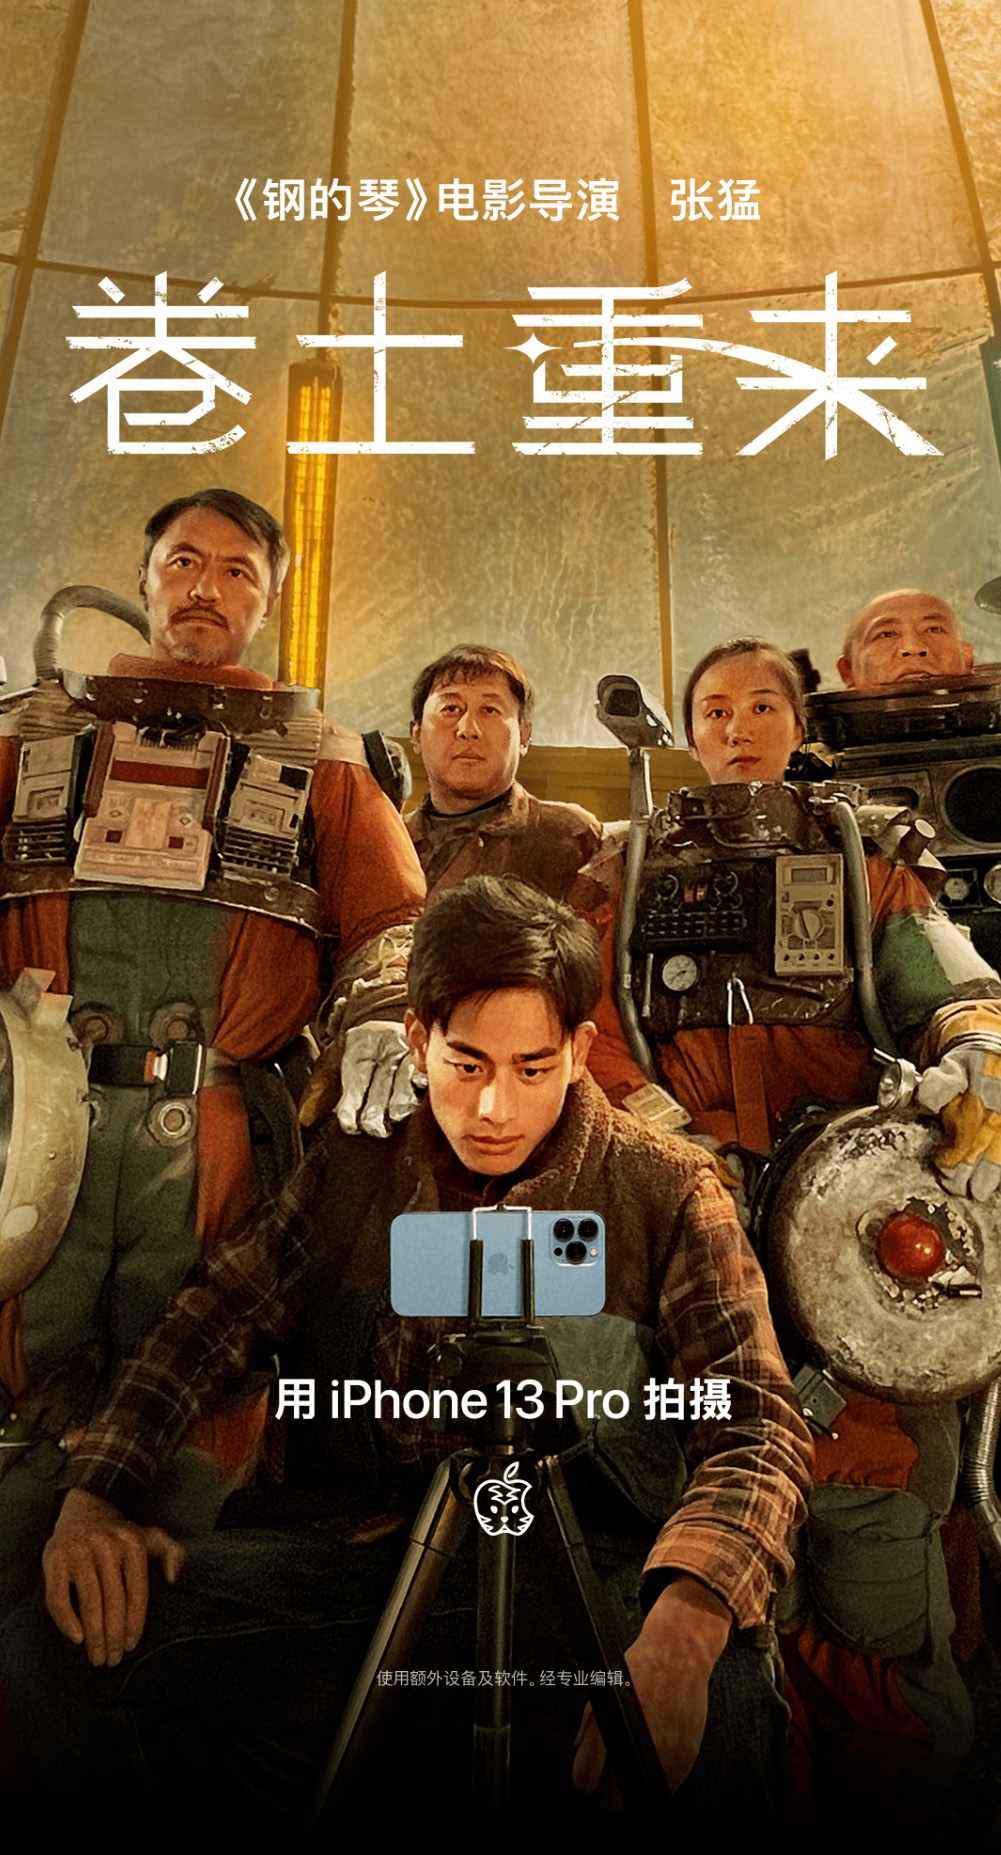 蘋果用 iPhone 13 Pro 拍攝微電影《卷土重來》慶祝台灣新年